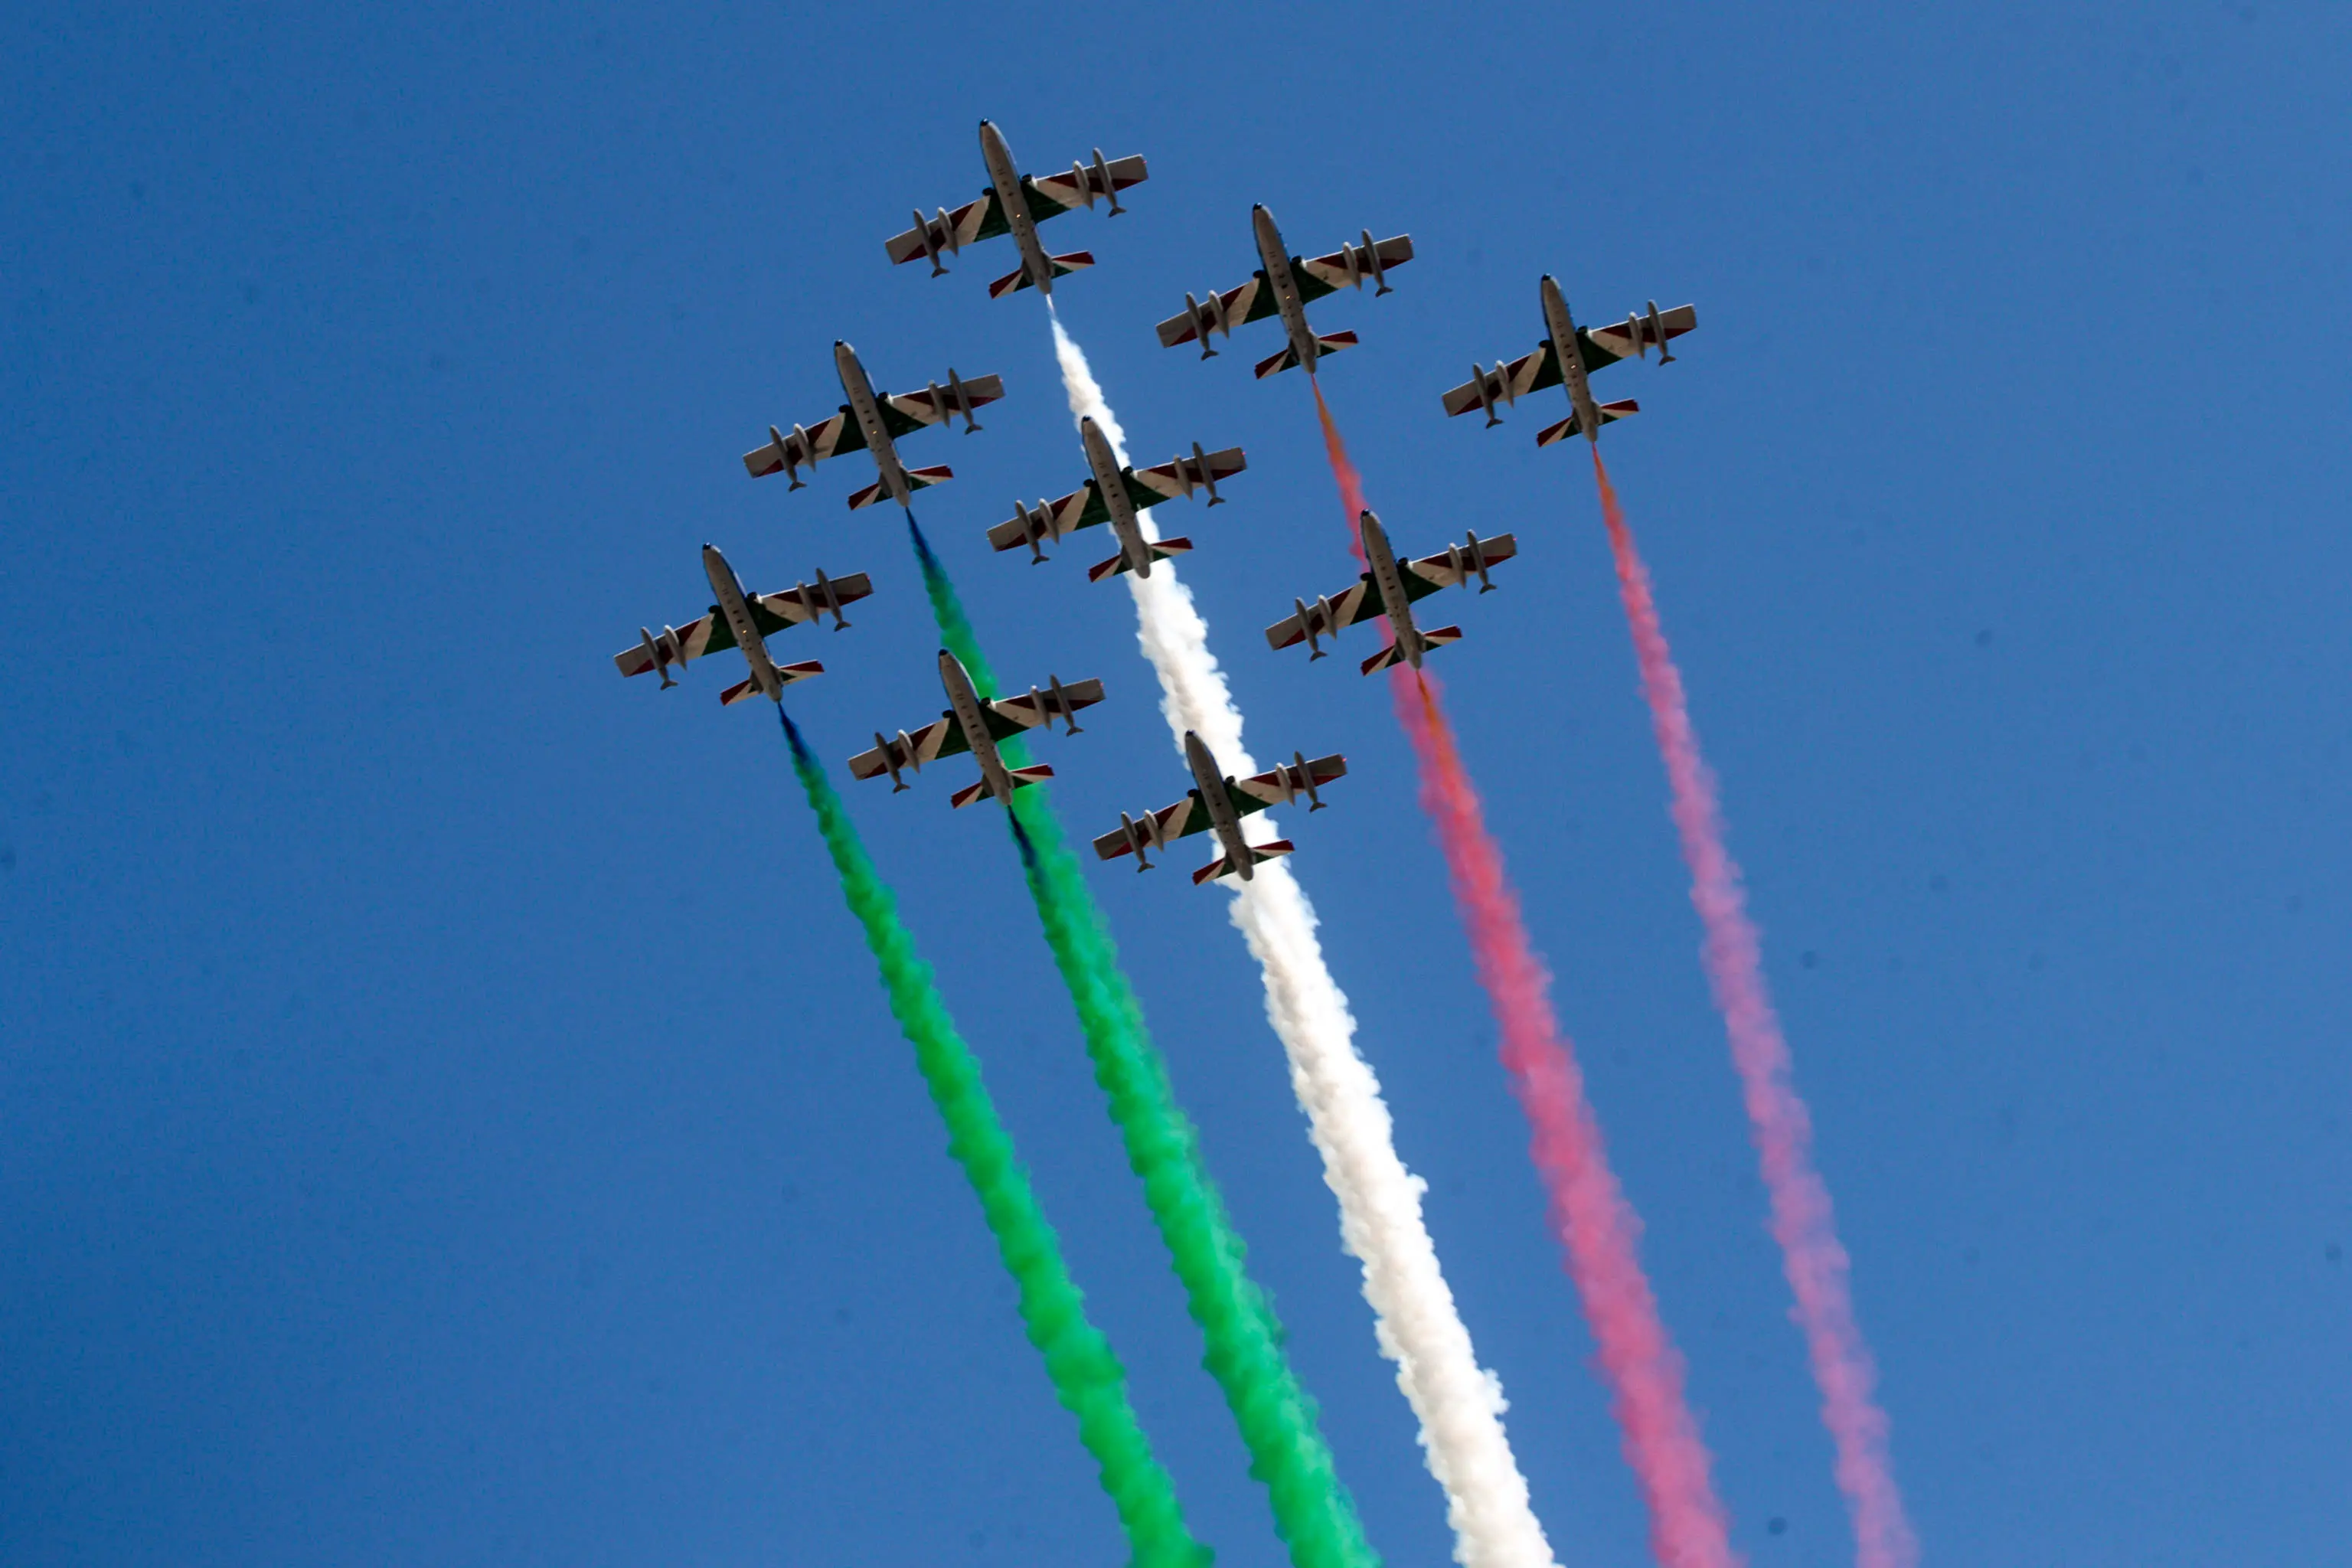 Frecce tricolori, oggi il sorvolo a Bologna: orario per vederle